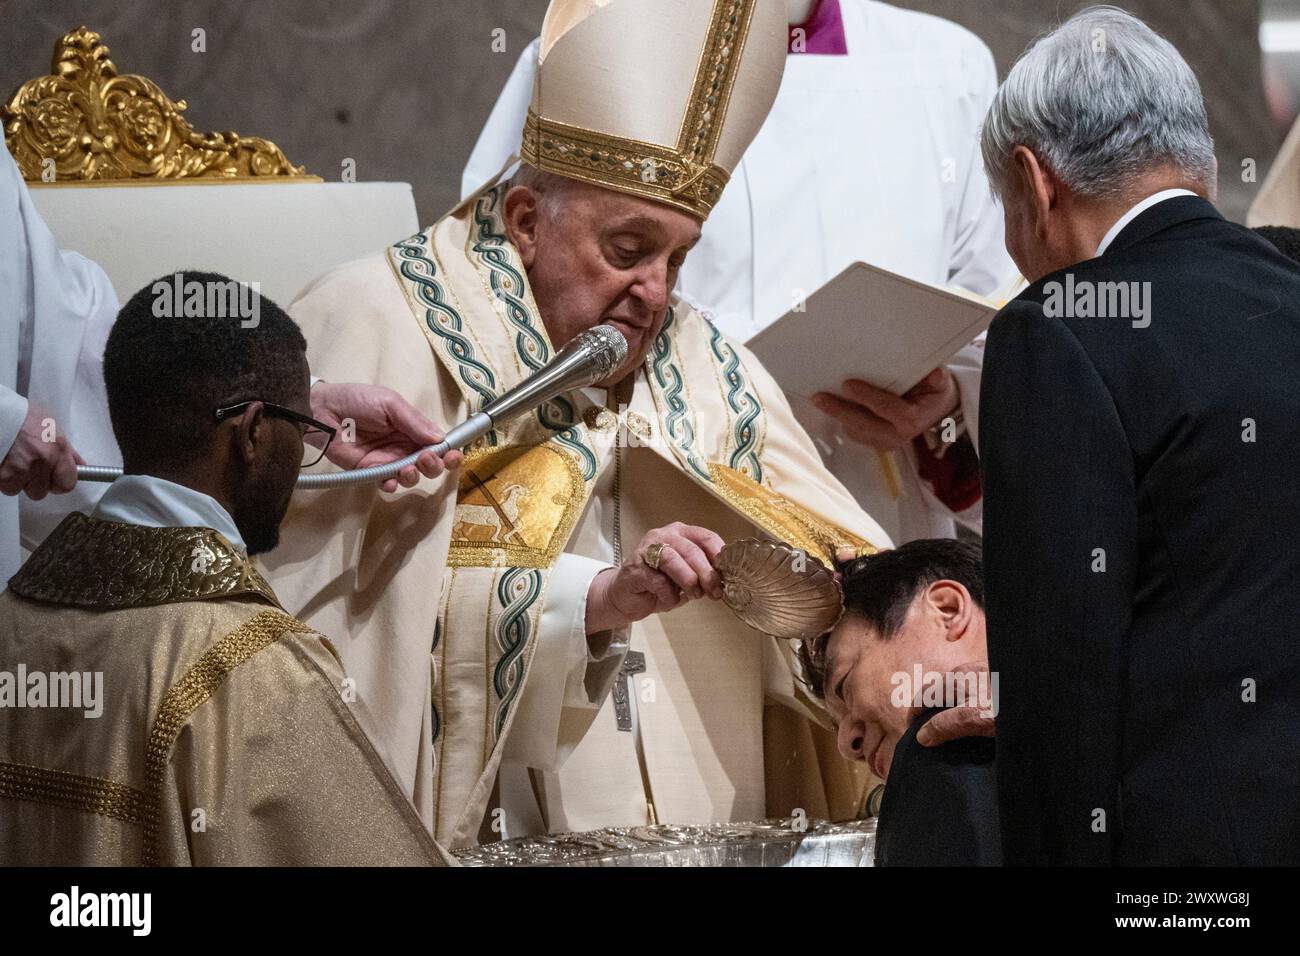 Papst Franziskus tauft einen Gläubigen während der feierlichen Ostervigil-Zeremonie. Christen auf der ganzen Welt feiern die Karwoche, gedenken der Kreuzigung Jesu Christi, die bis zu seiner Auferstehung an Ostern führt. Stockfoto